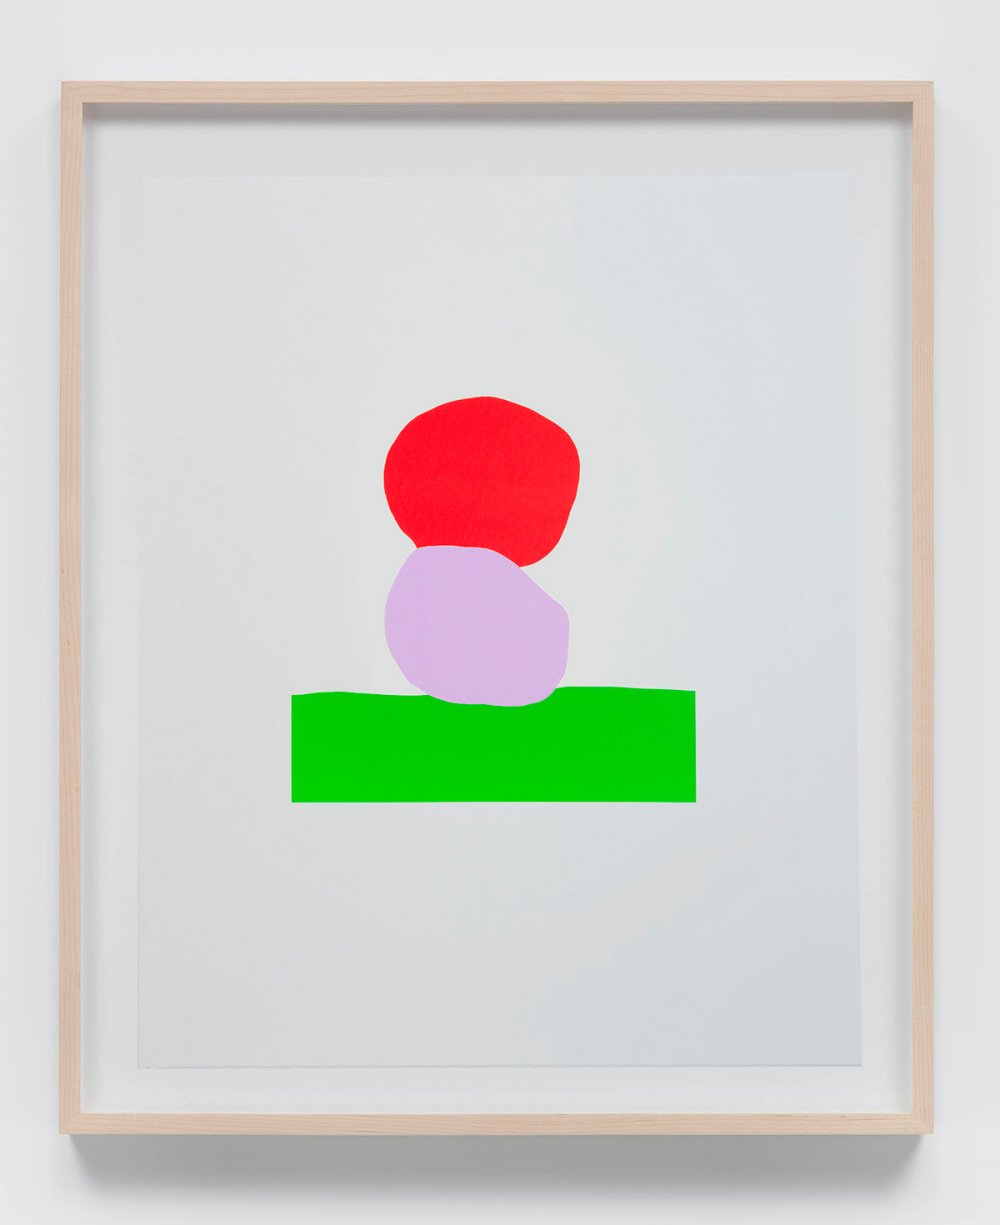 Federico Herrero, Untitled, 2020